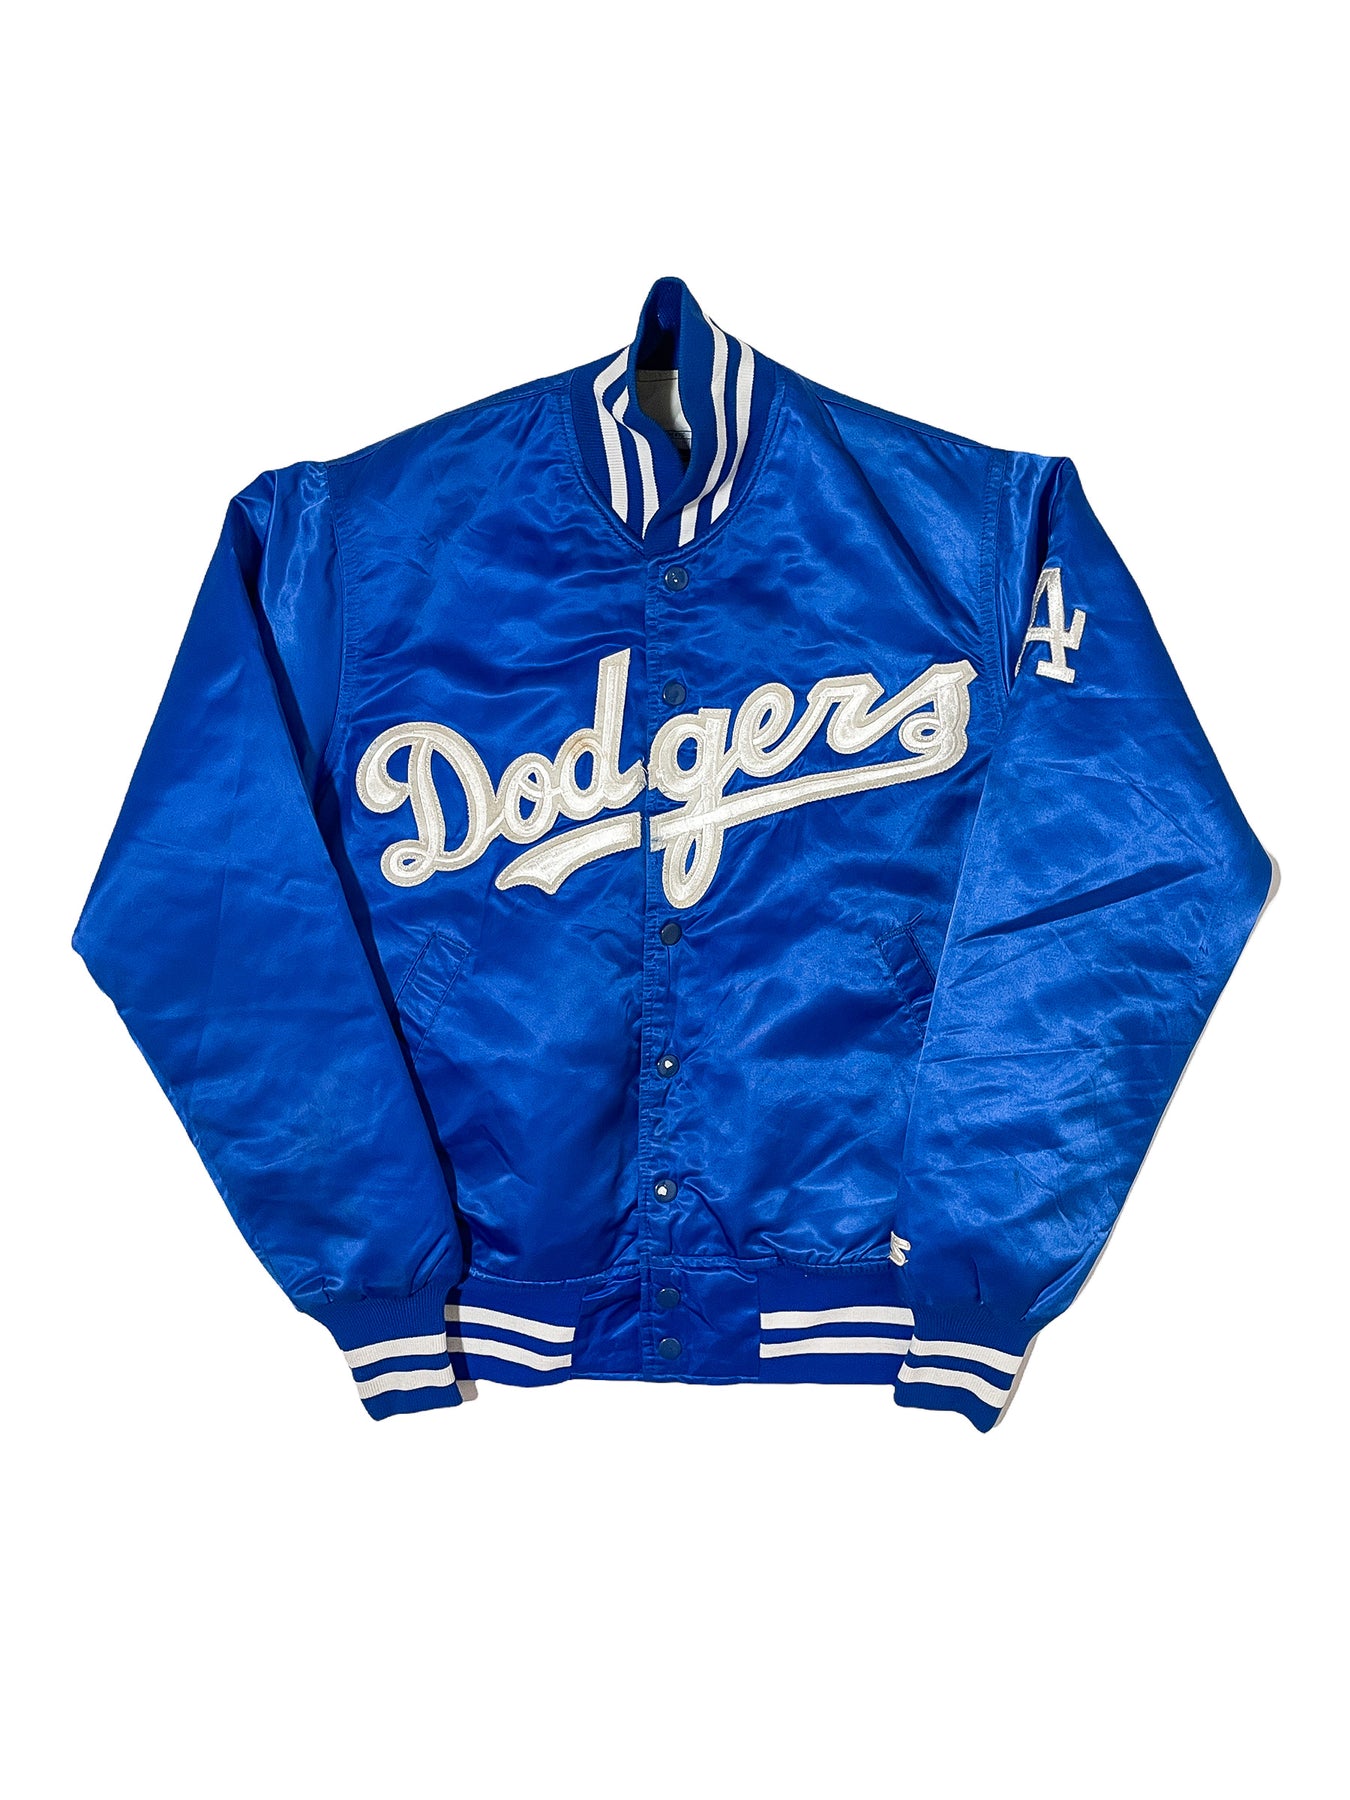 Vintage La Dodgers Baseball Jacket (XL)